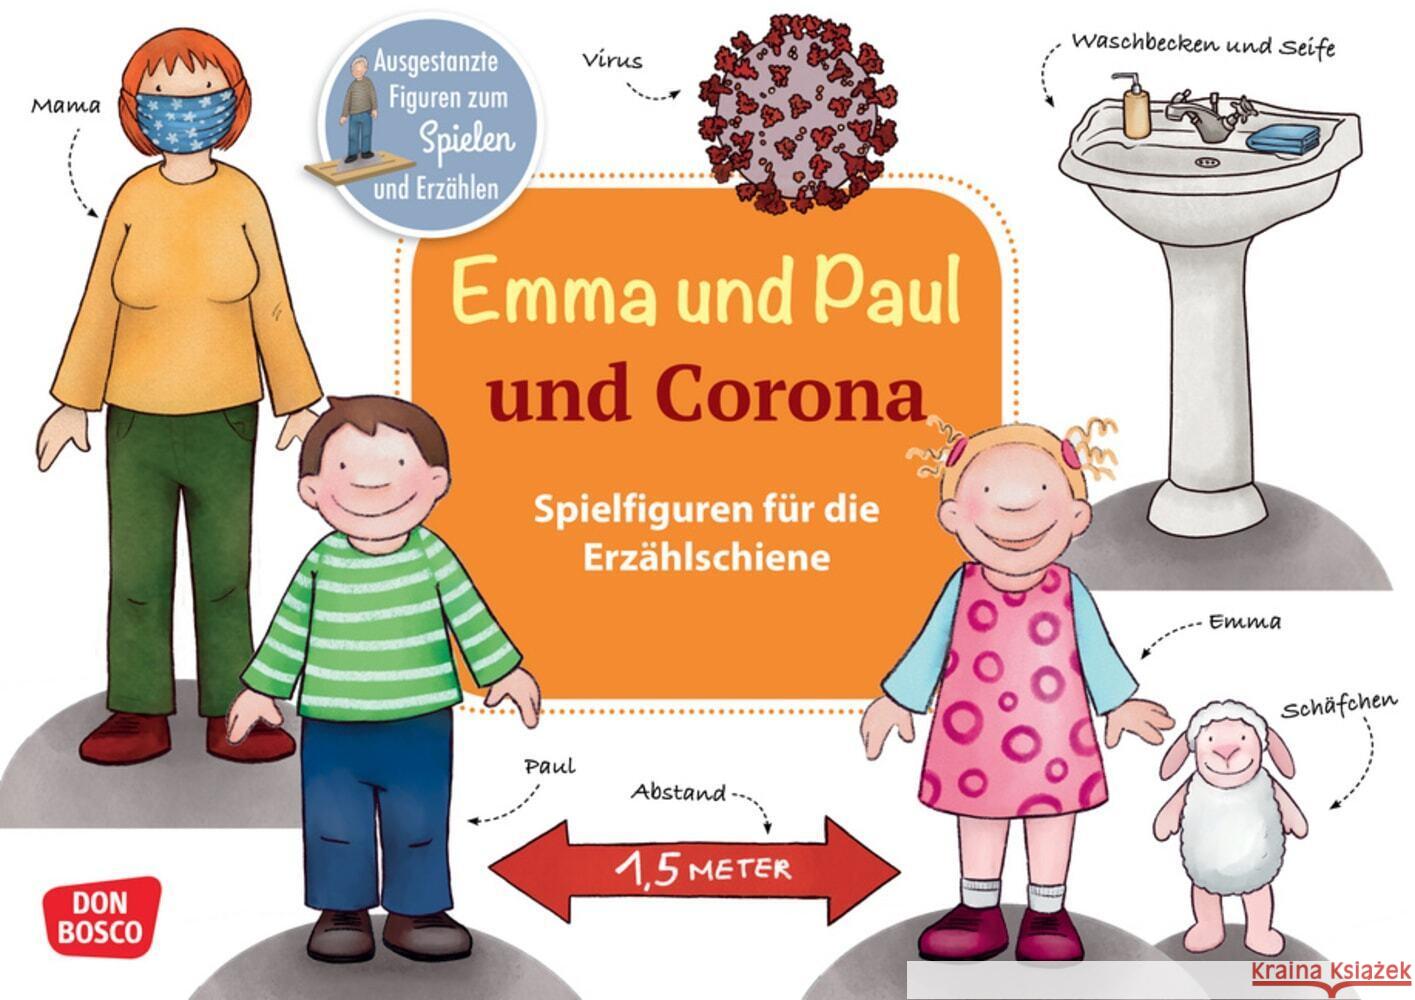 Emma und Paul und Corona., m. 1 Beilage Lehner, Monika 4260179517013 Don Bosco Medien - książka